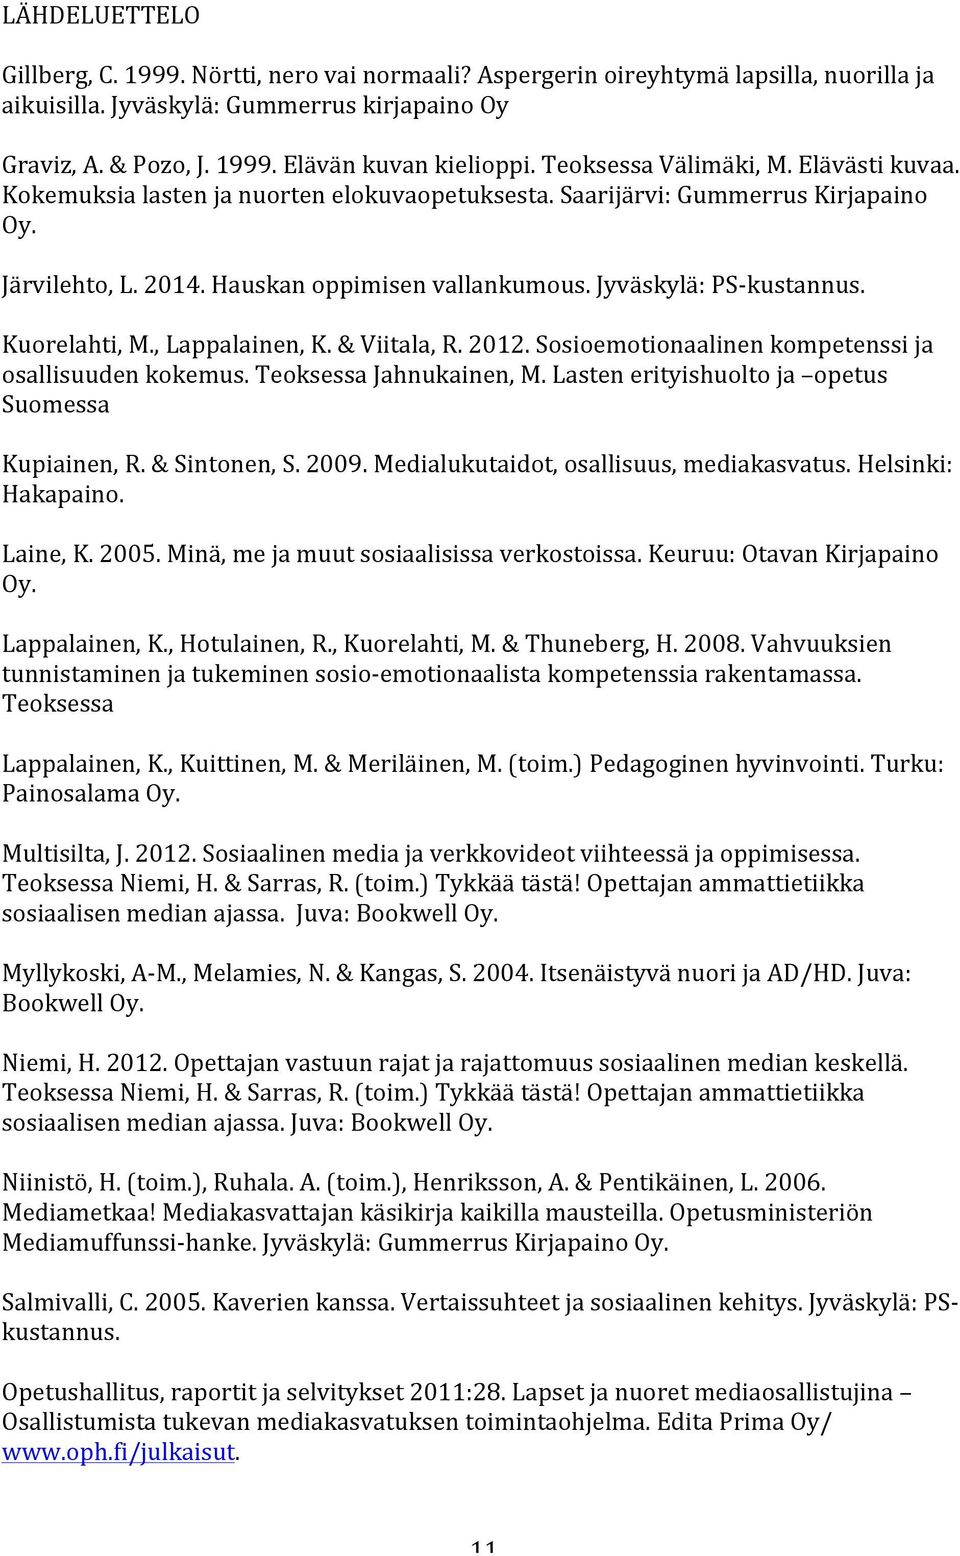 Jyväskylä: PS- kustannus. Kuorelahti, M., Lappalainen, K. & Viitala, R. 2012. Sosioemotionaalinen kompetenssi ja osallisuuden kokemus. Teoksessa Jahnukainen, M.